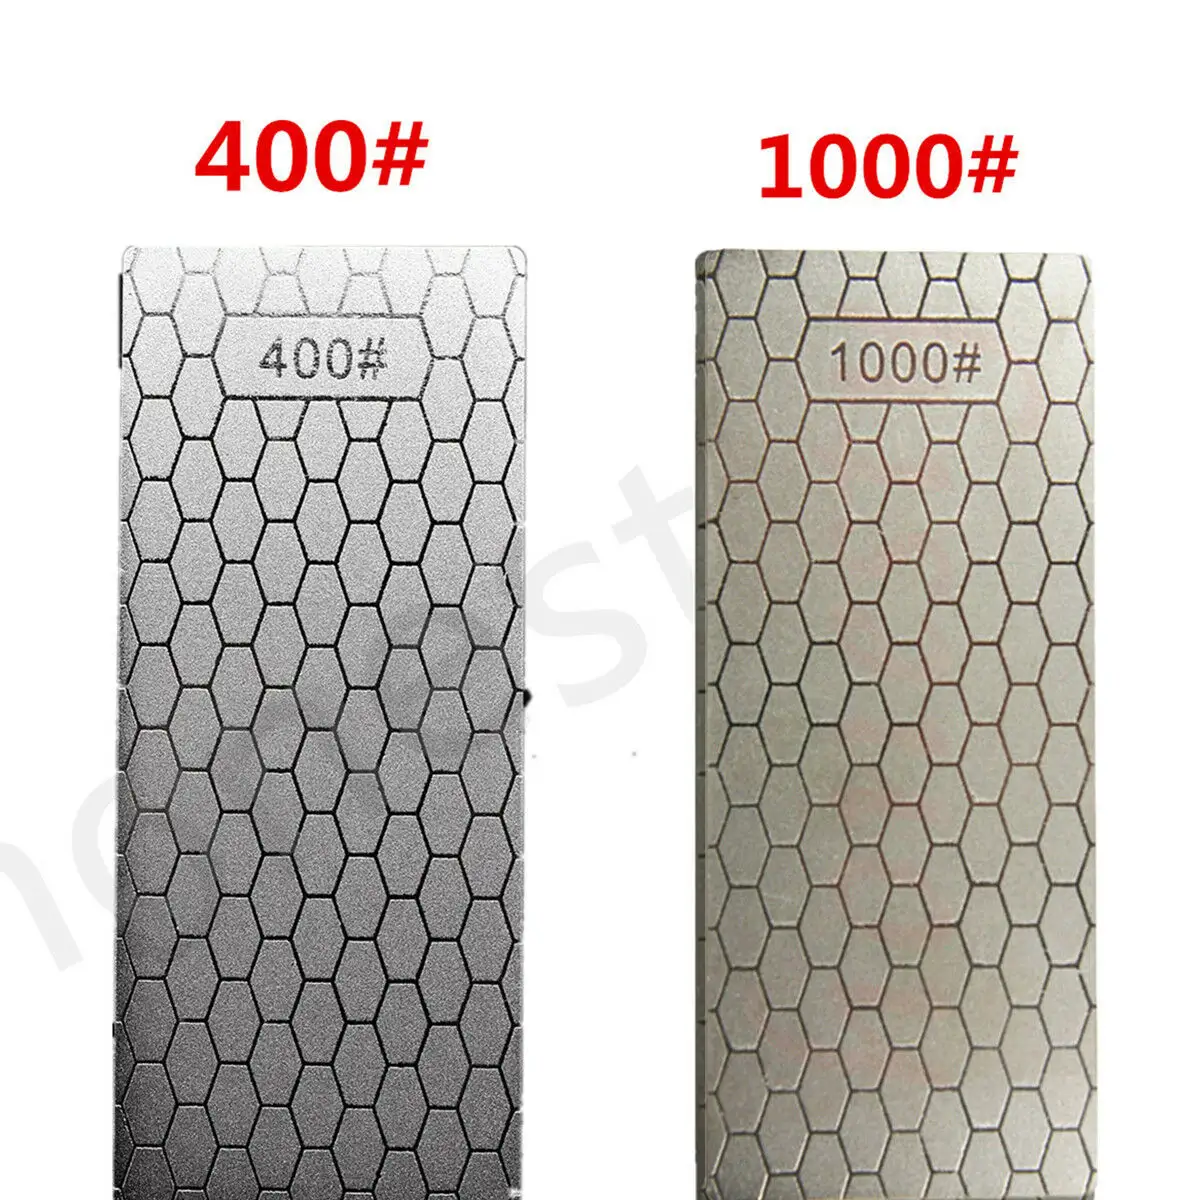 Двусторонний Алмазный точильный камень DMD 400/1000 #, японский точильный камень